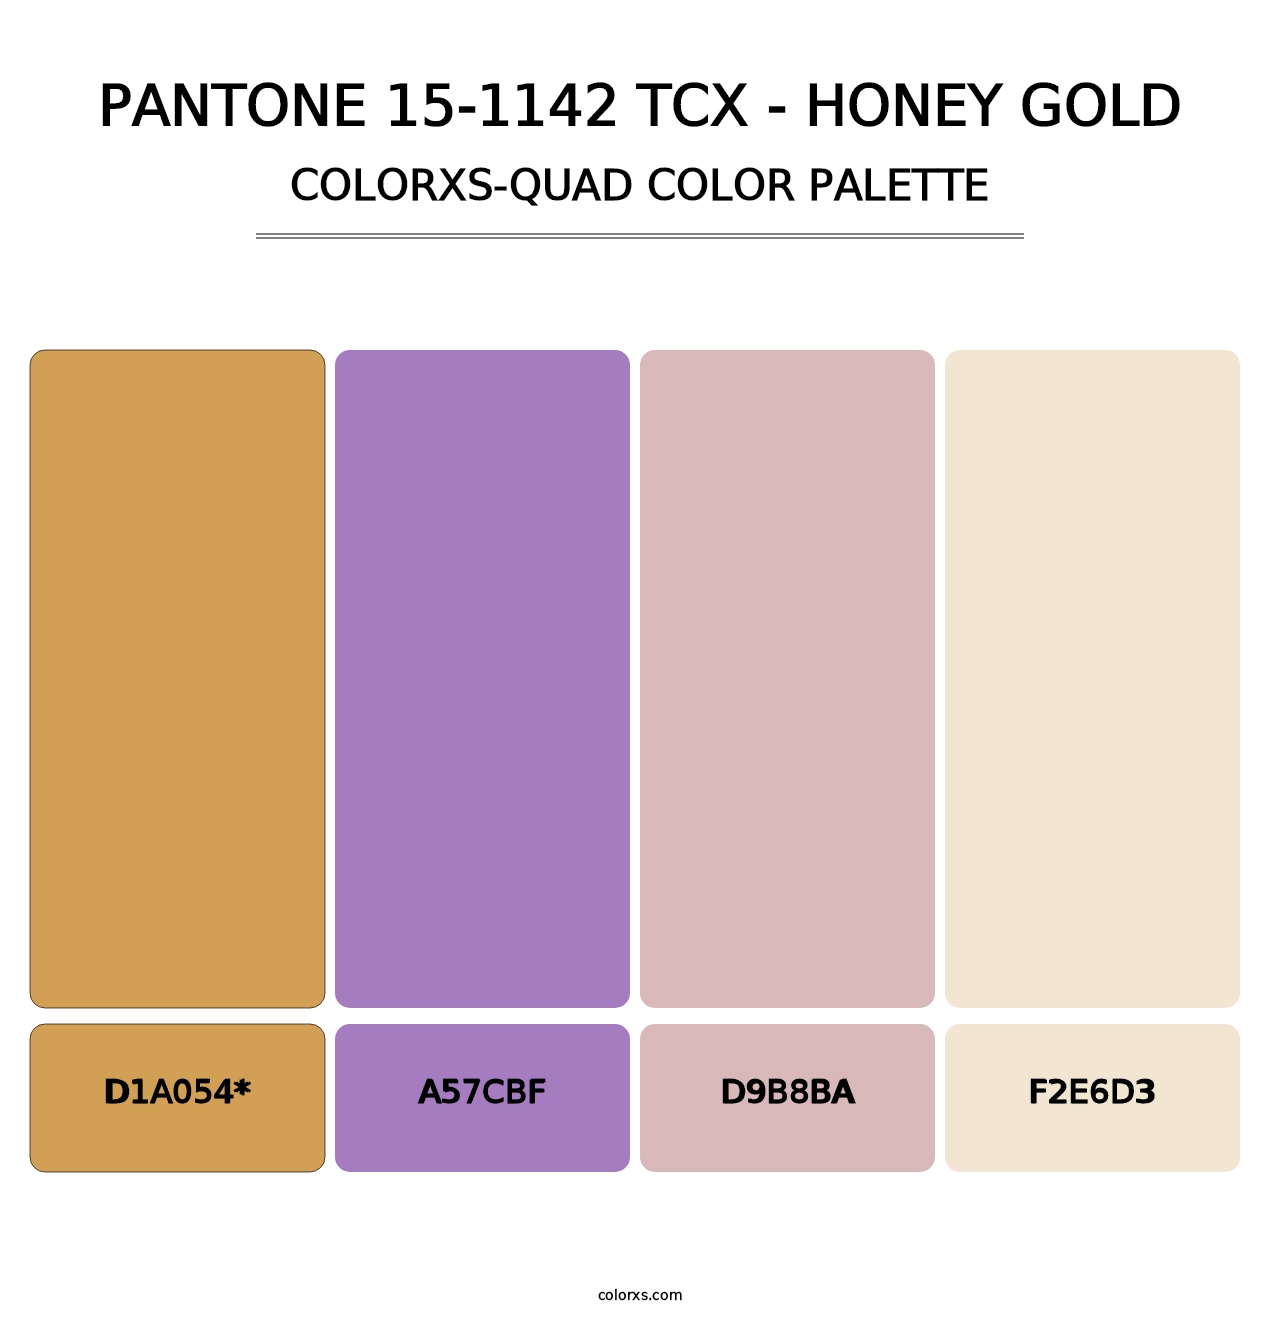 PANTONE 15-1142 TCX - Honey Gold - Colorxs Quad Palette